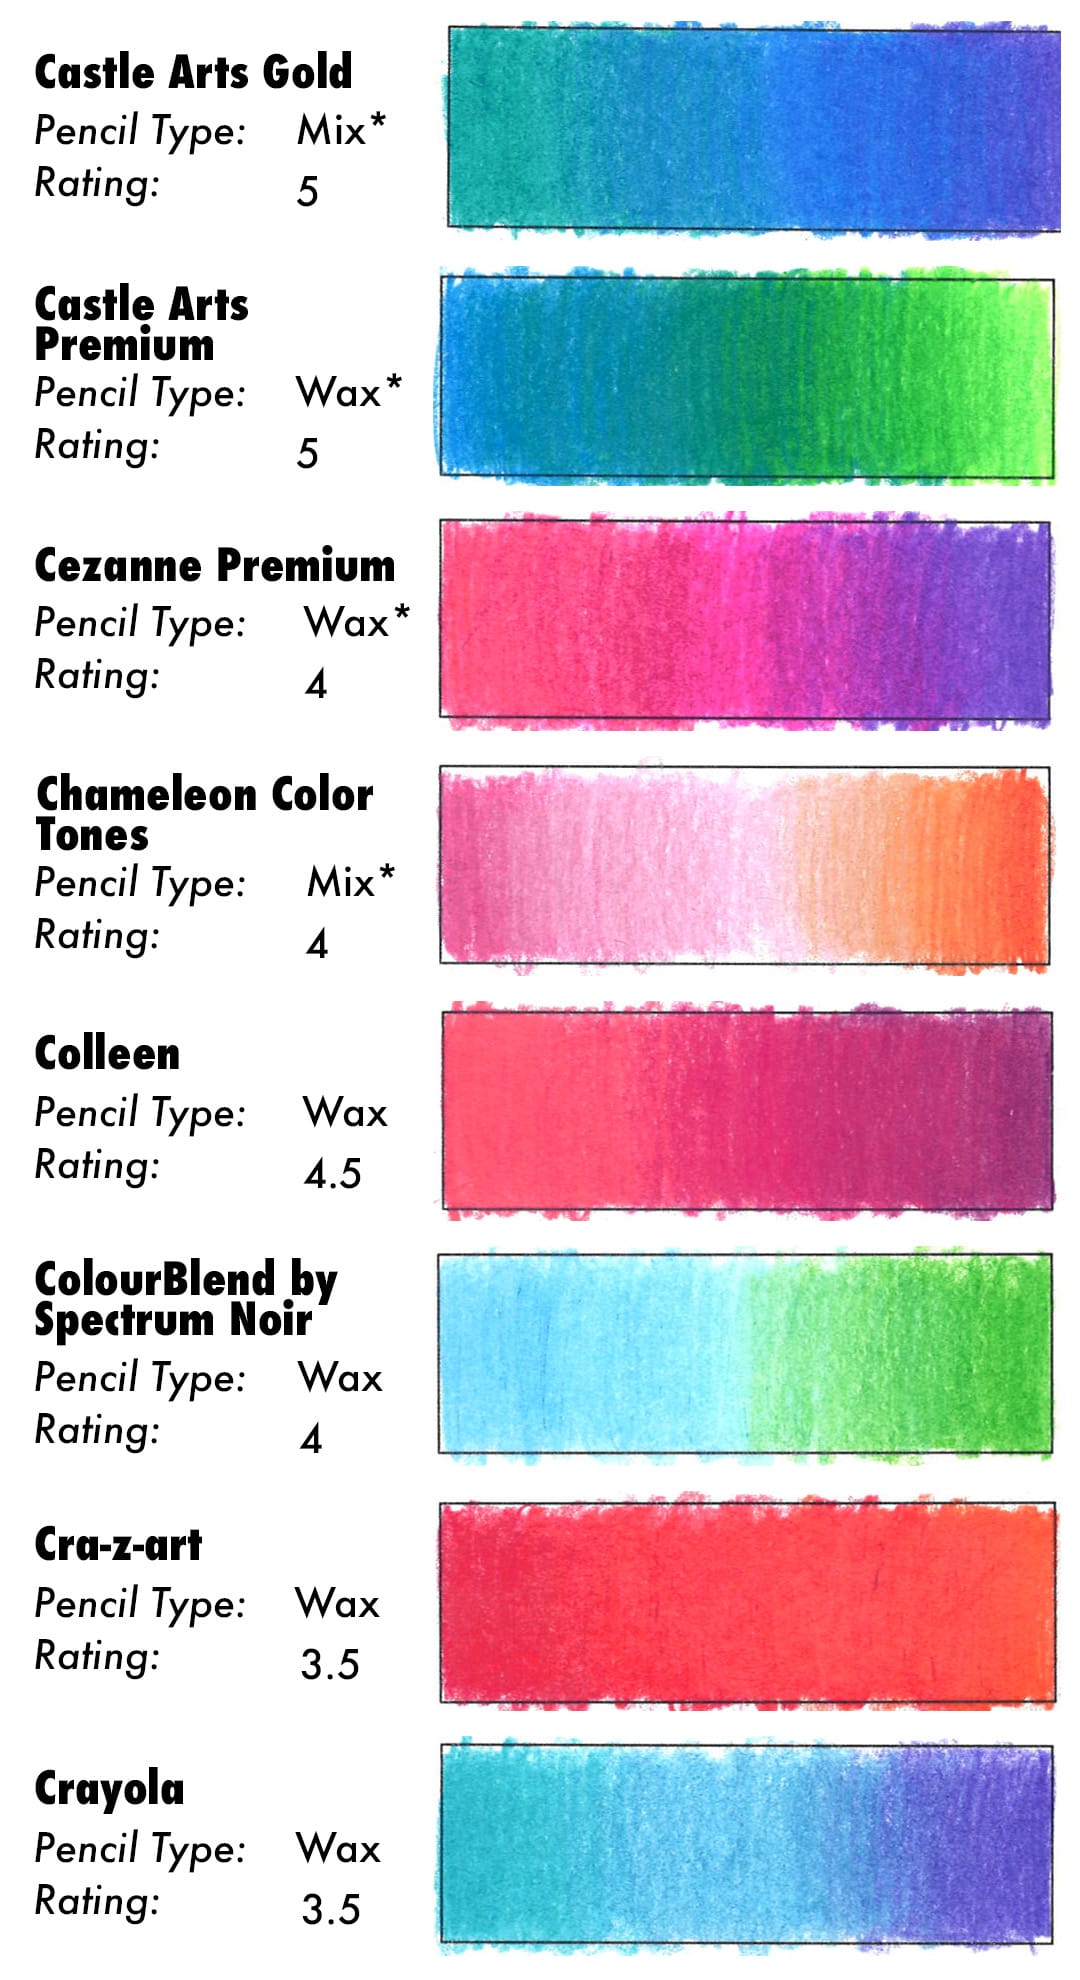 Colored Pencil Blending Results for Castle Arts Gold, Castle Arts Premium, Cezanne Premium, Chameleon Color Tones, Colleen, ColourBlend by Spectrum Noir, Cra-z-art, and Crayola.